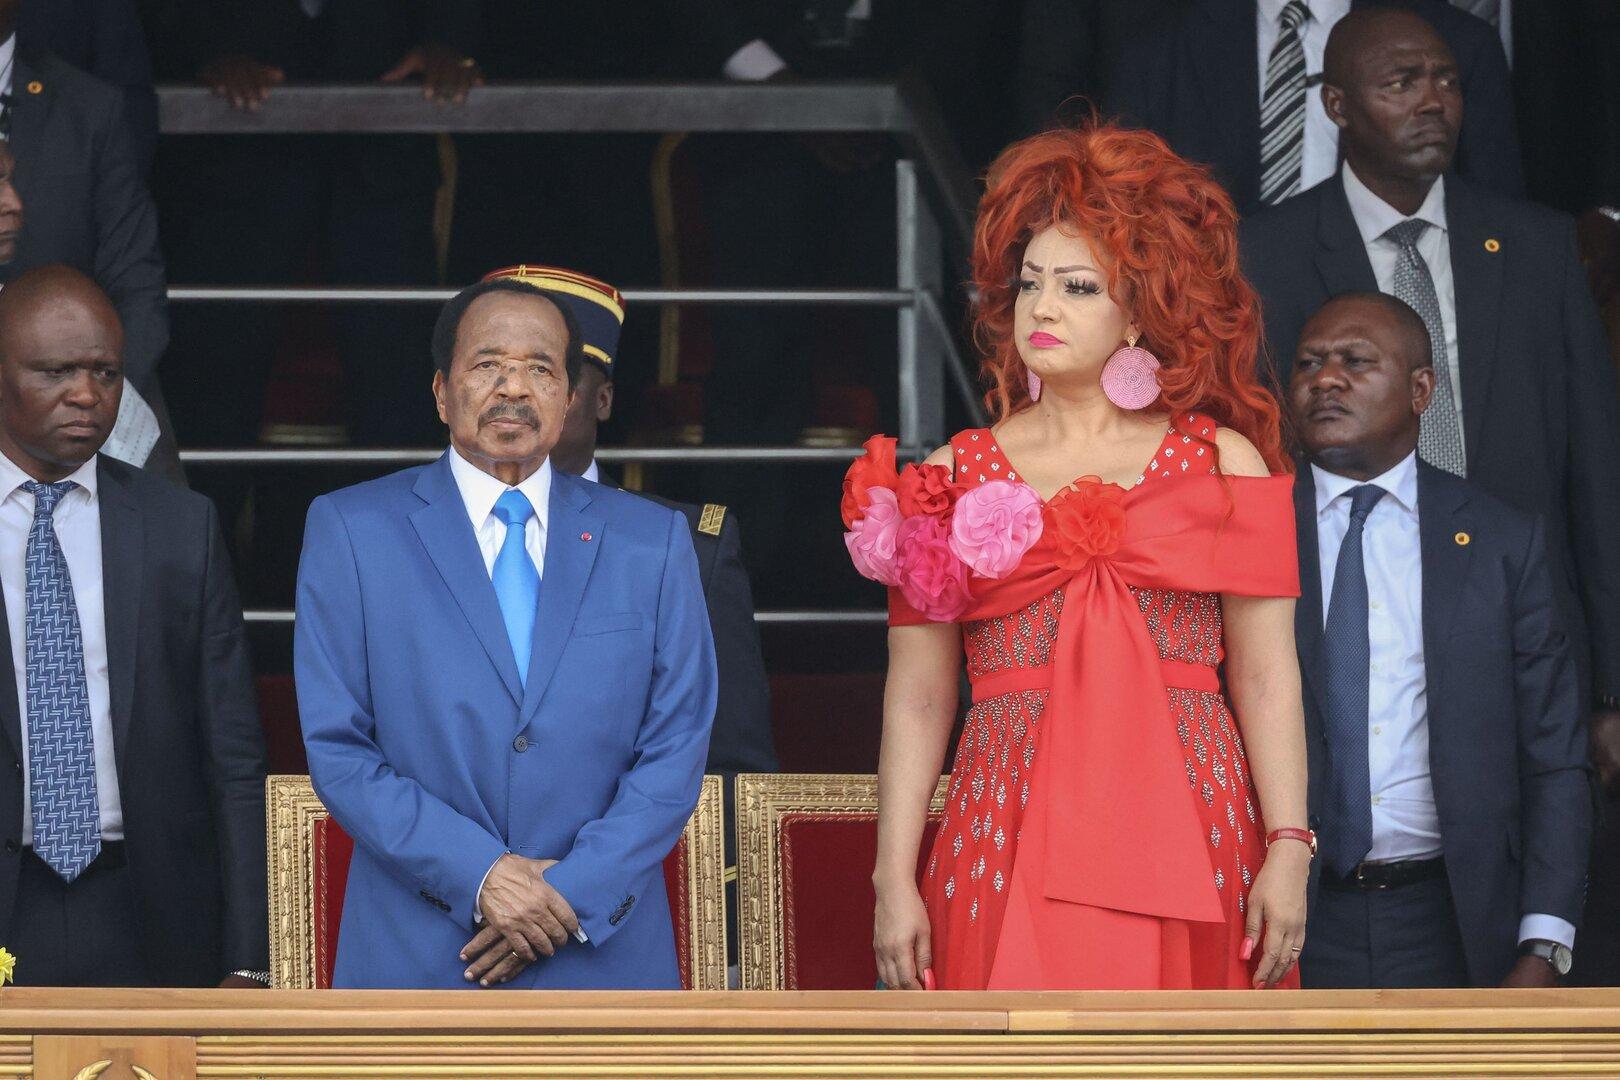 Kameruns Präsidententochter küsst eine Frau -  und löst Debatte aus